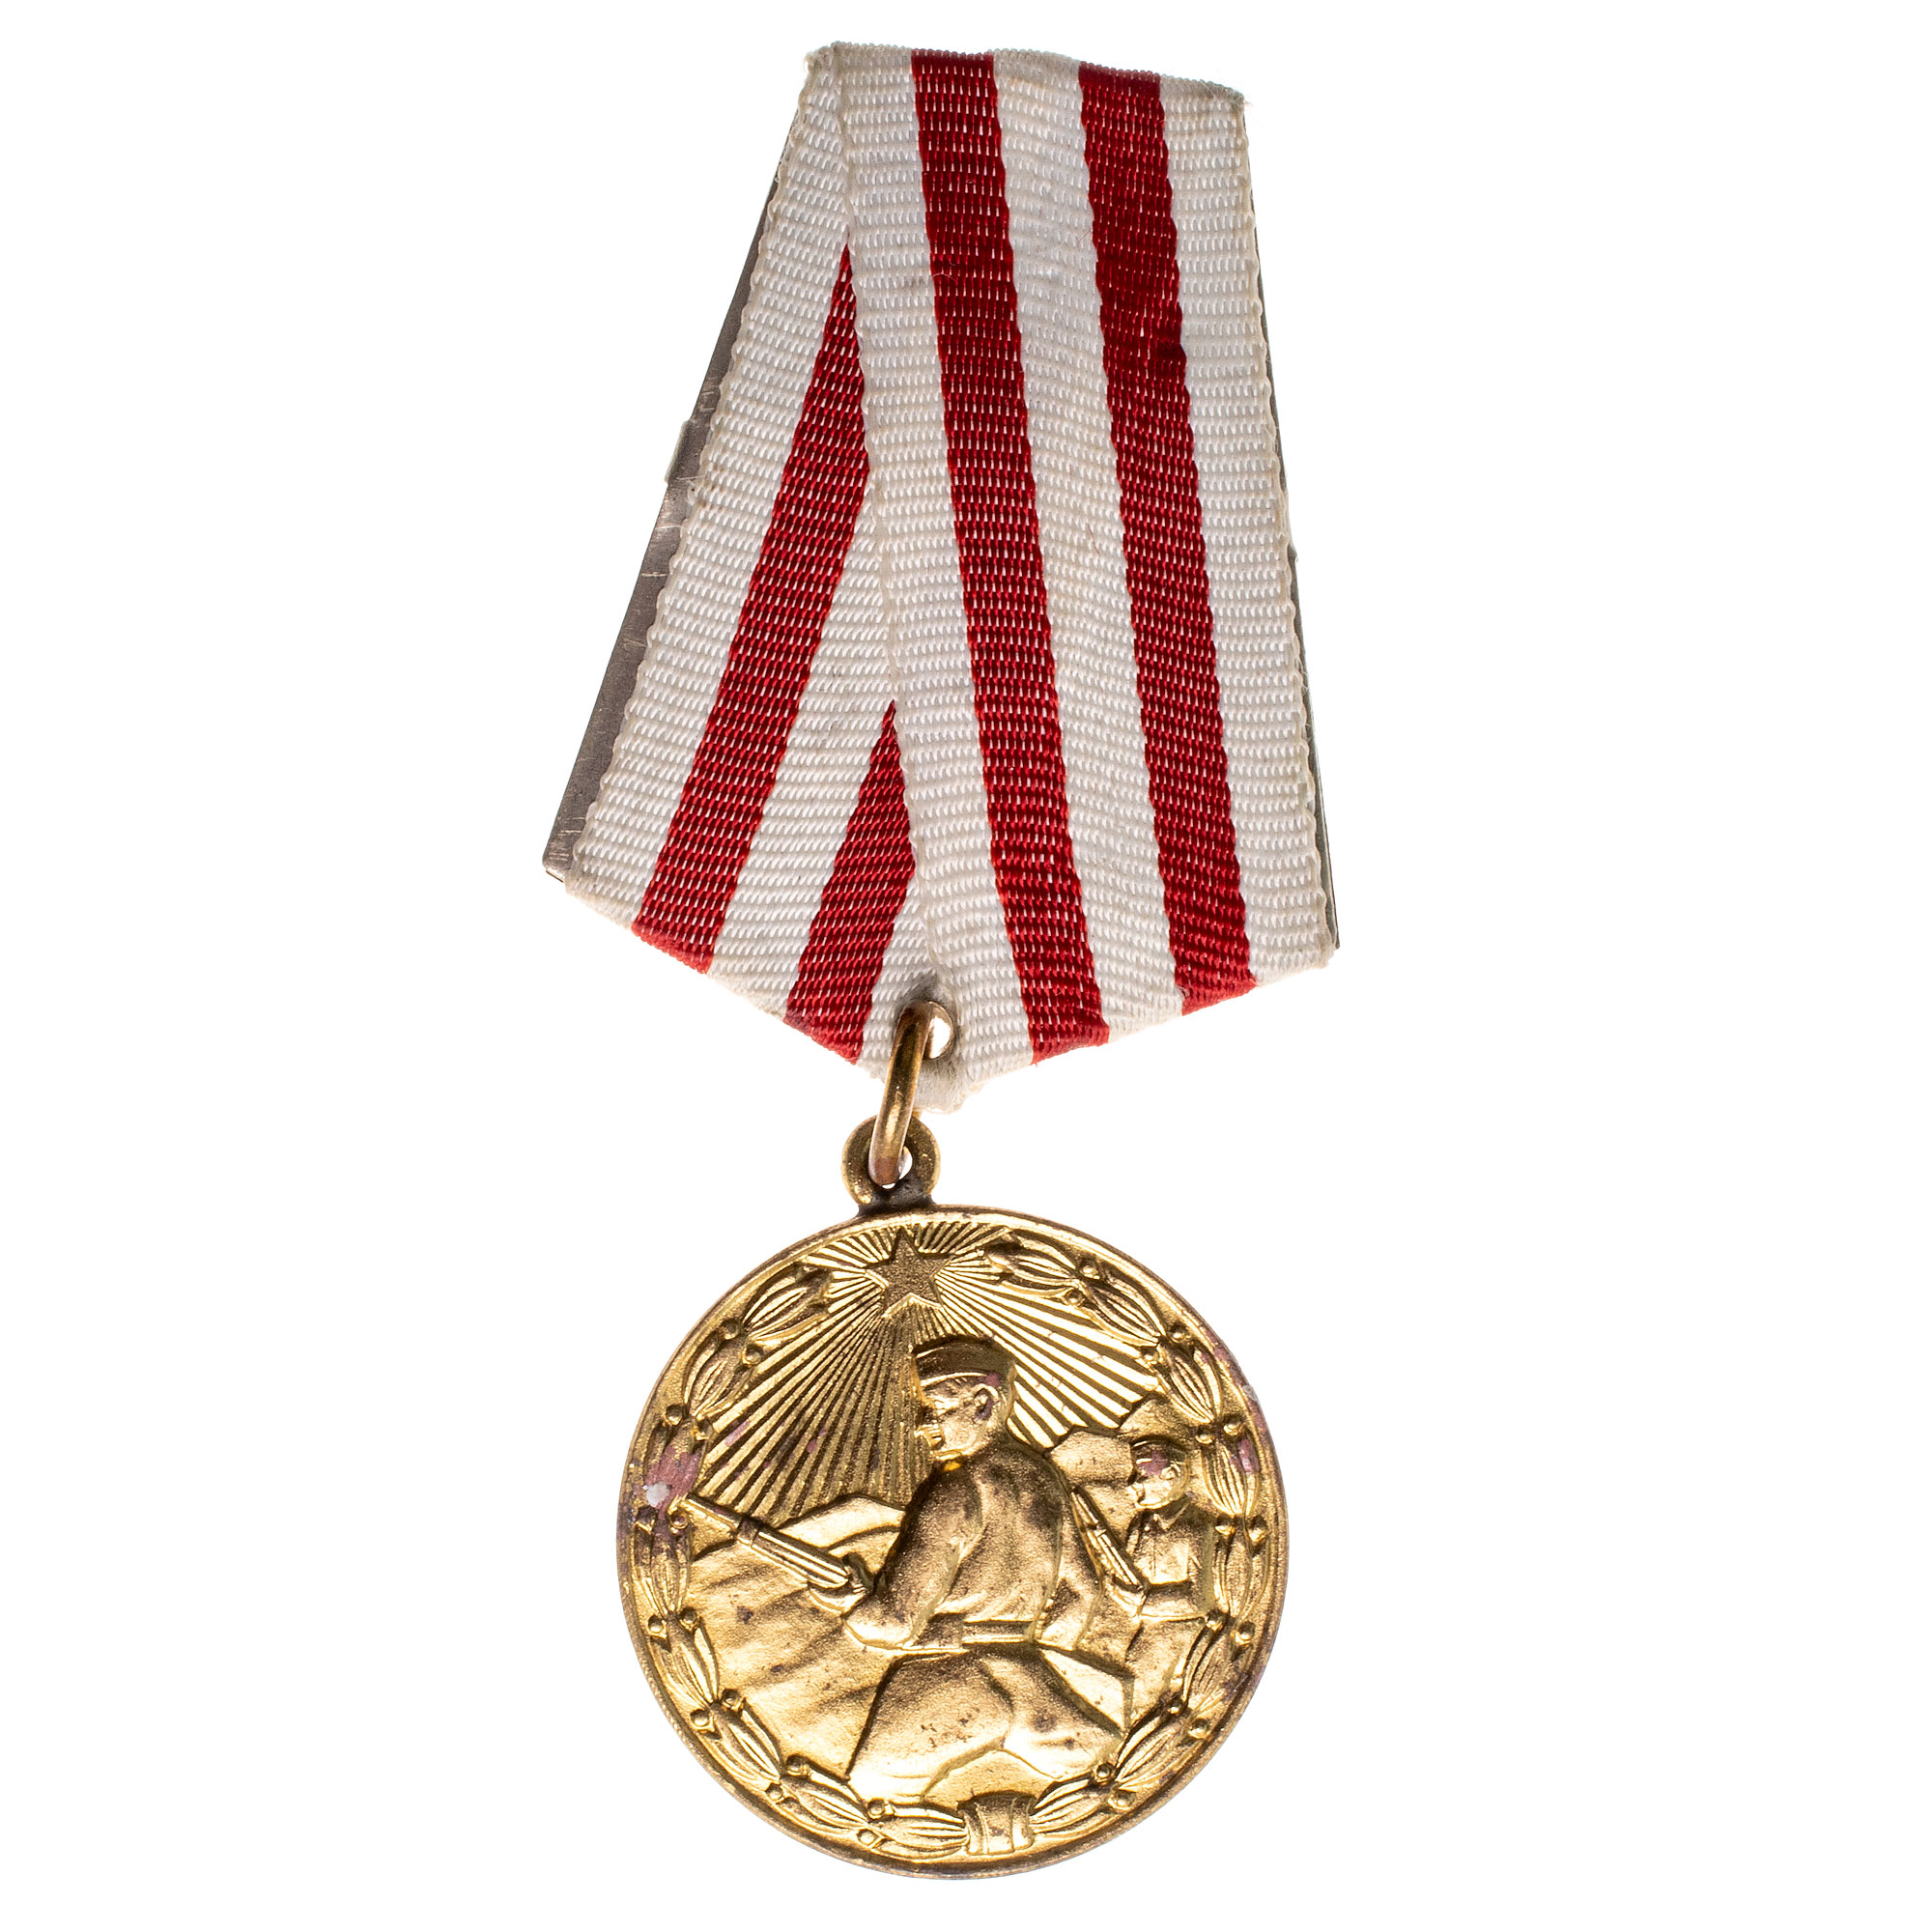 Албания. Медаль "За храбрость".